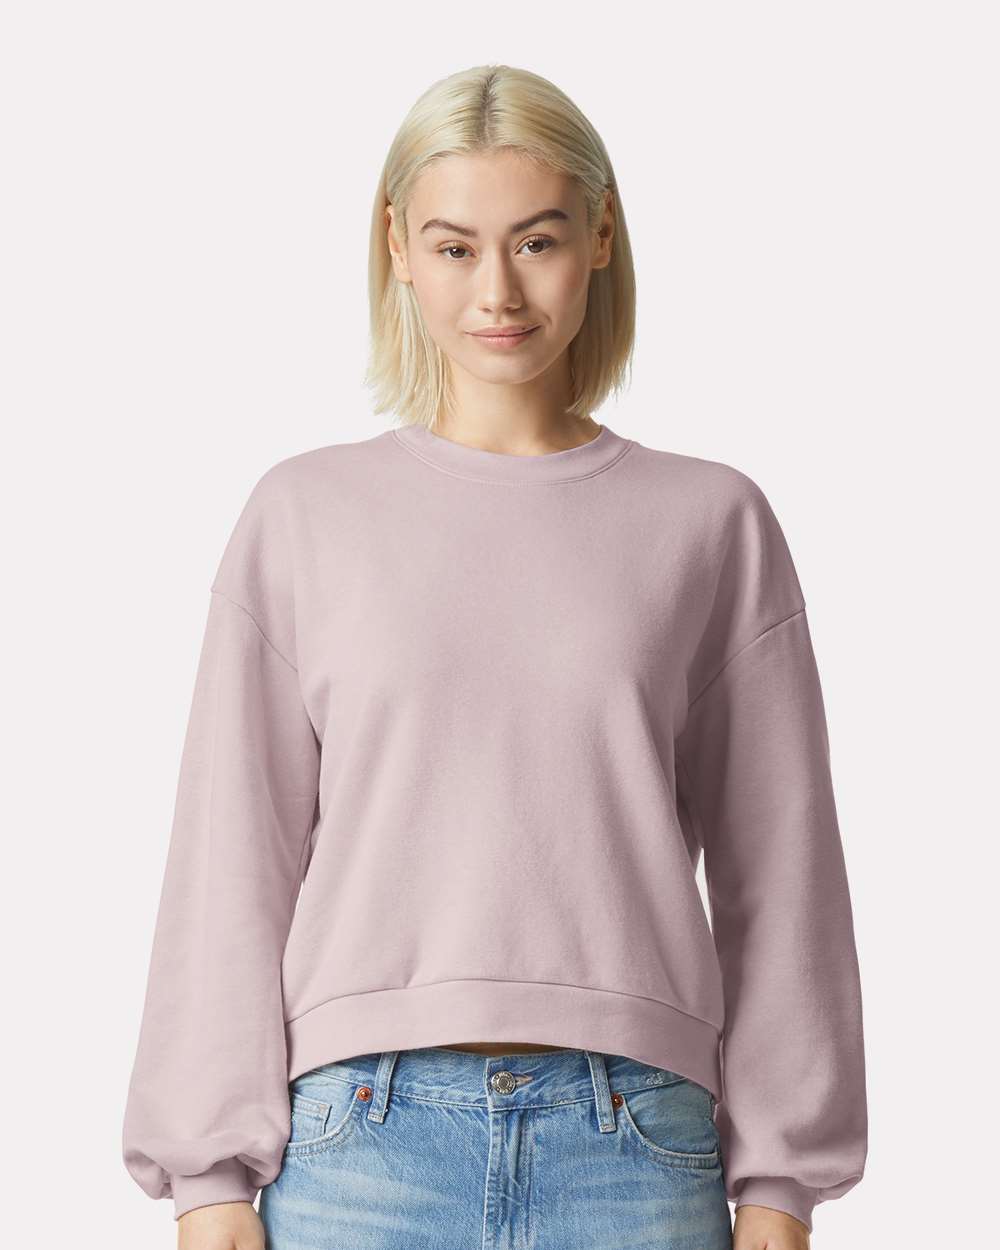 Ultimate Comfort- ReFlex Women's Crewneck Sweatshirt